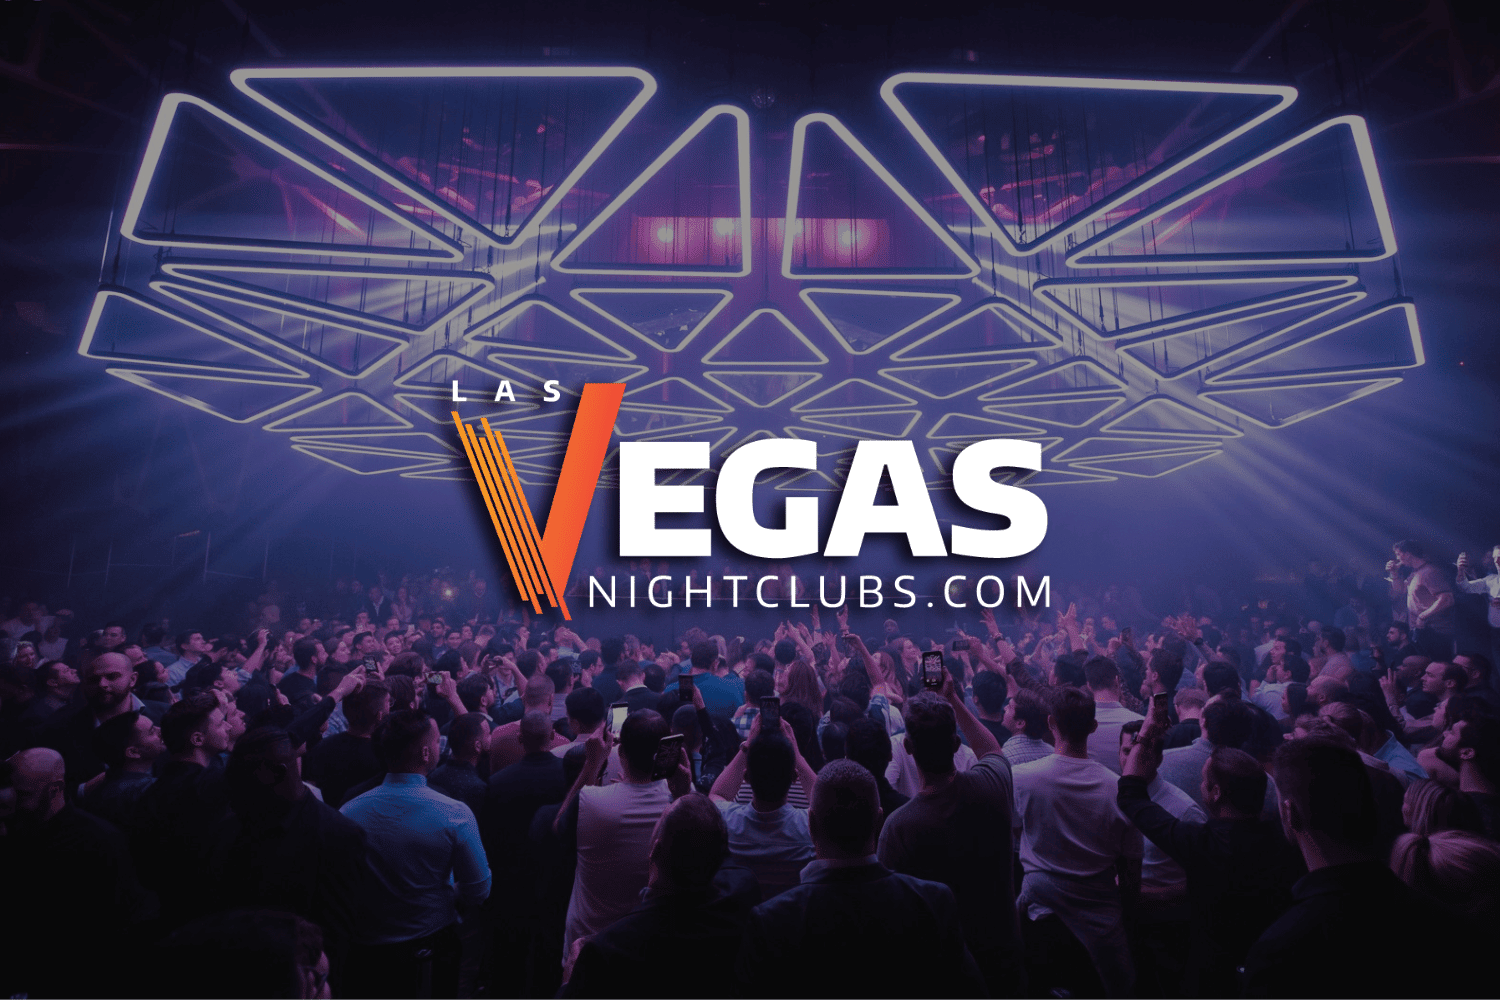 Las Vegas Nightlife  Las vegas nightlife, Vegas nightlife, Las vegas view